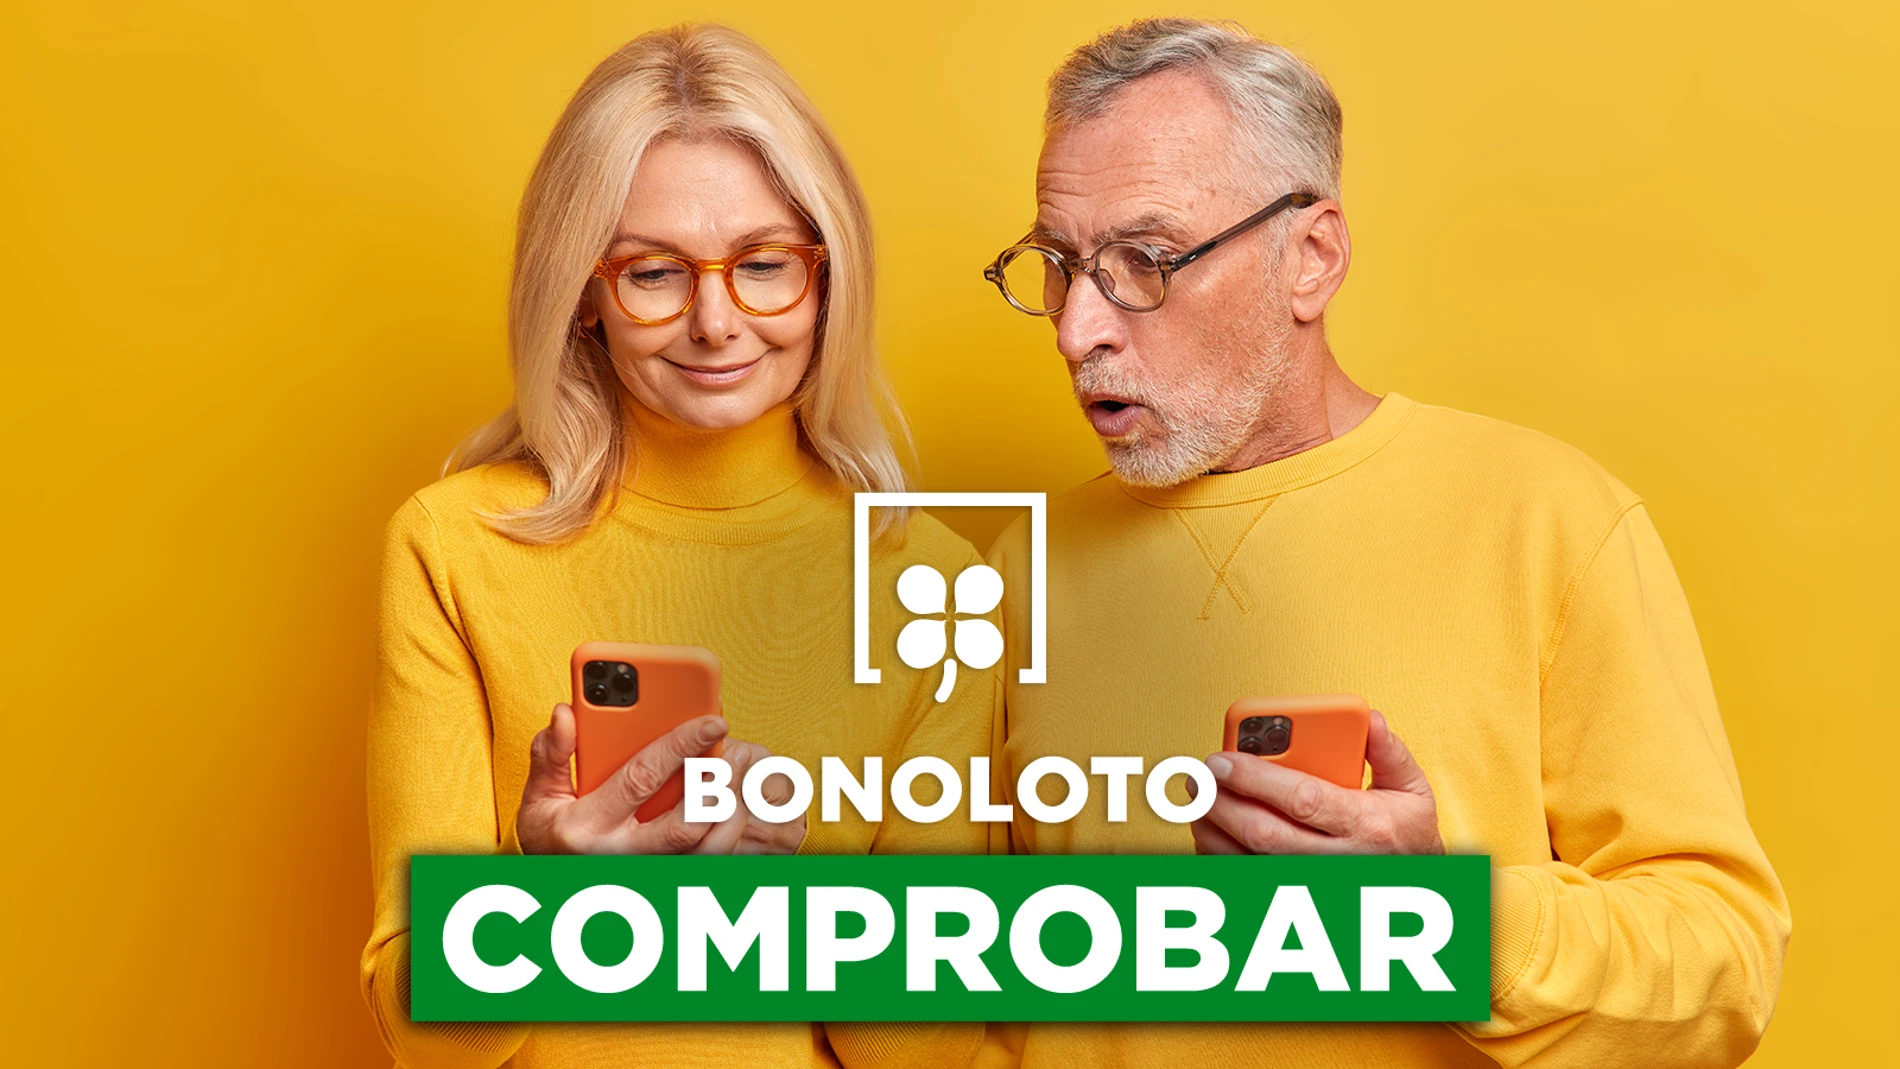 Bonoloto: comprobar hoy, viernes 9 de diciembre de 2022